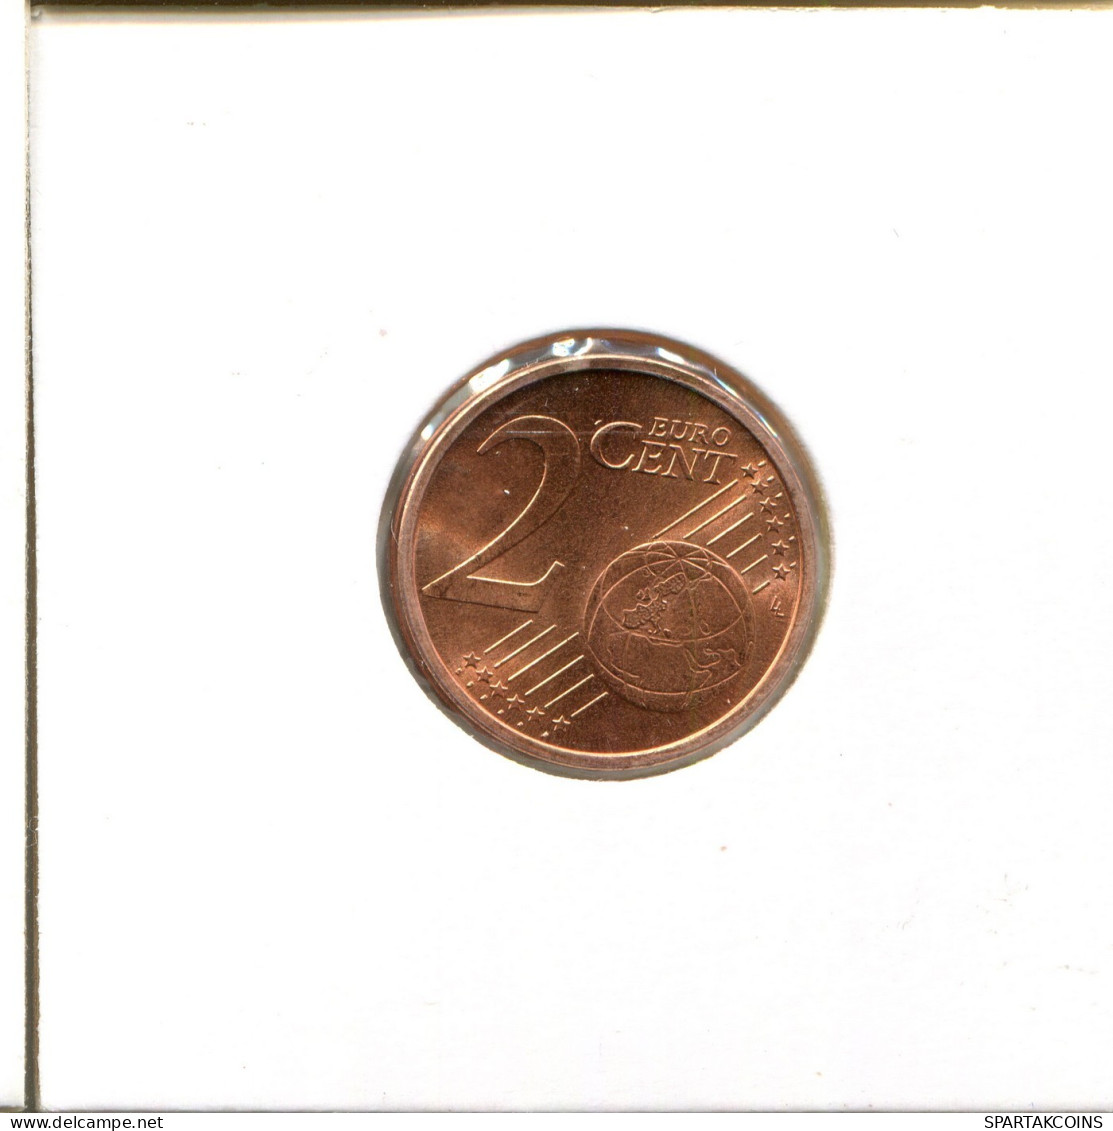 2 EURO CENTS 2004 GERMANY Coin #EU140.U.A - Germania